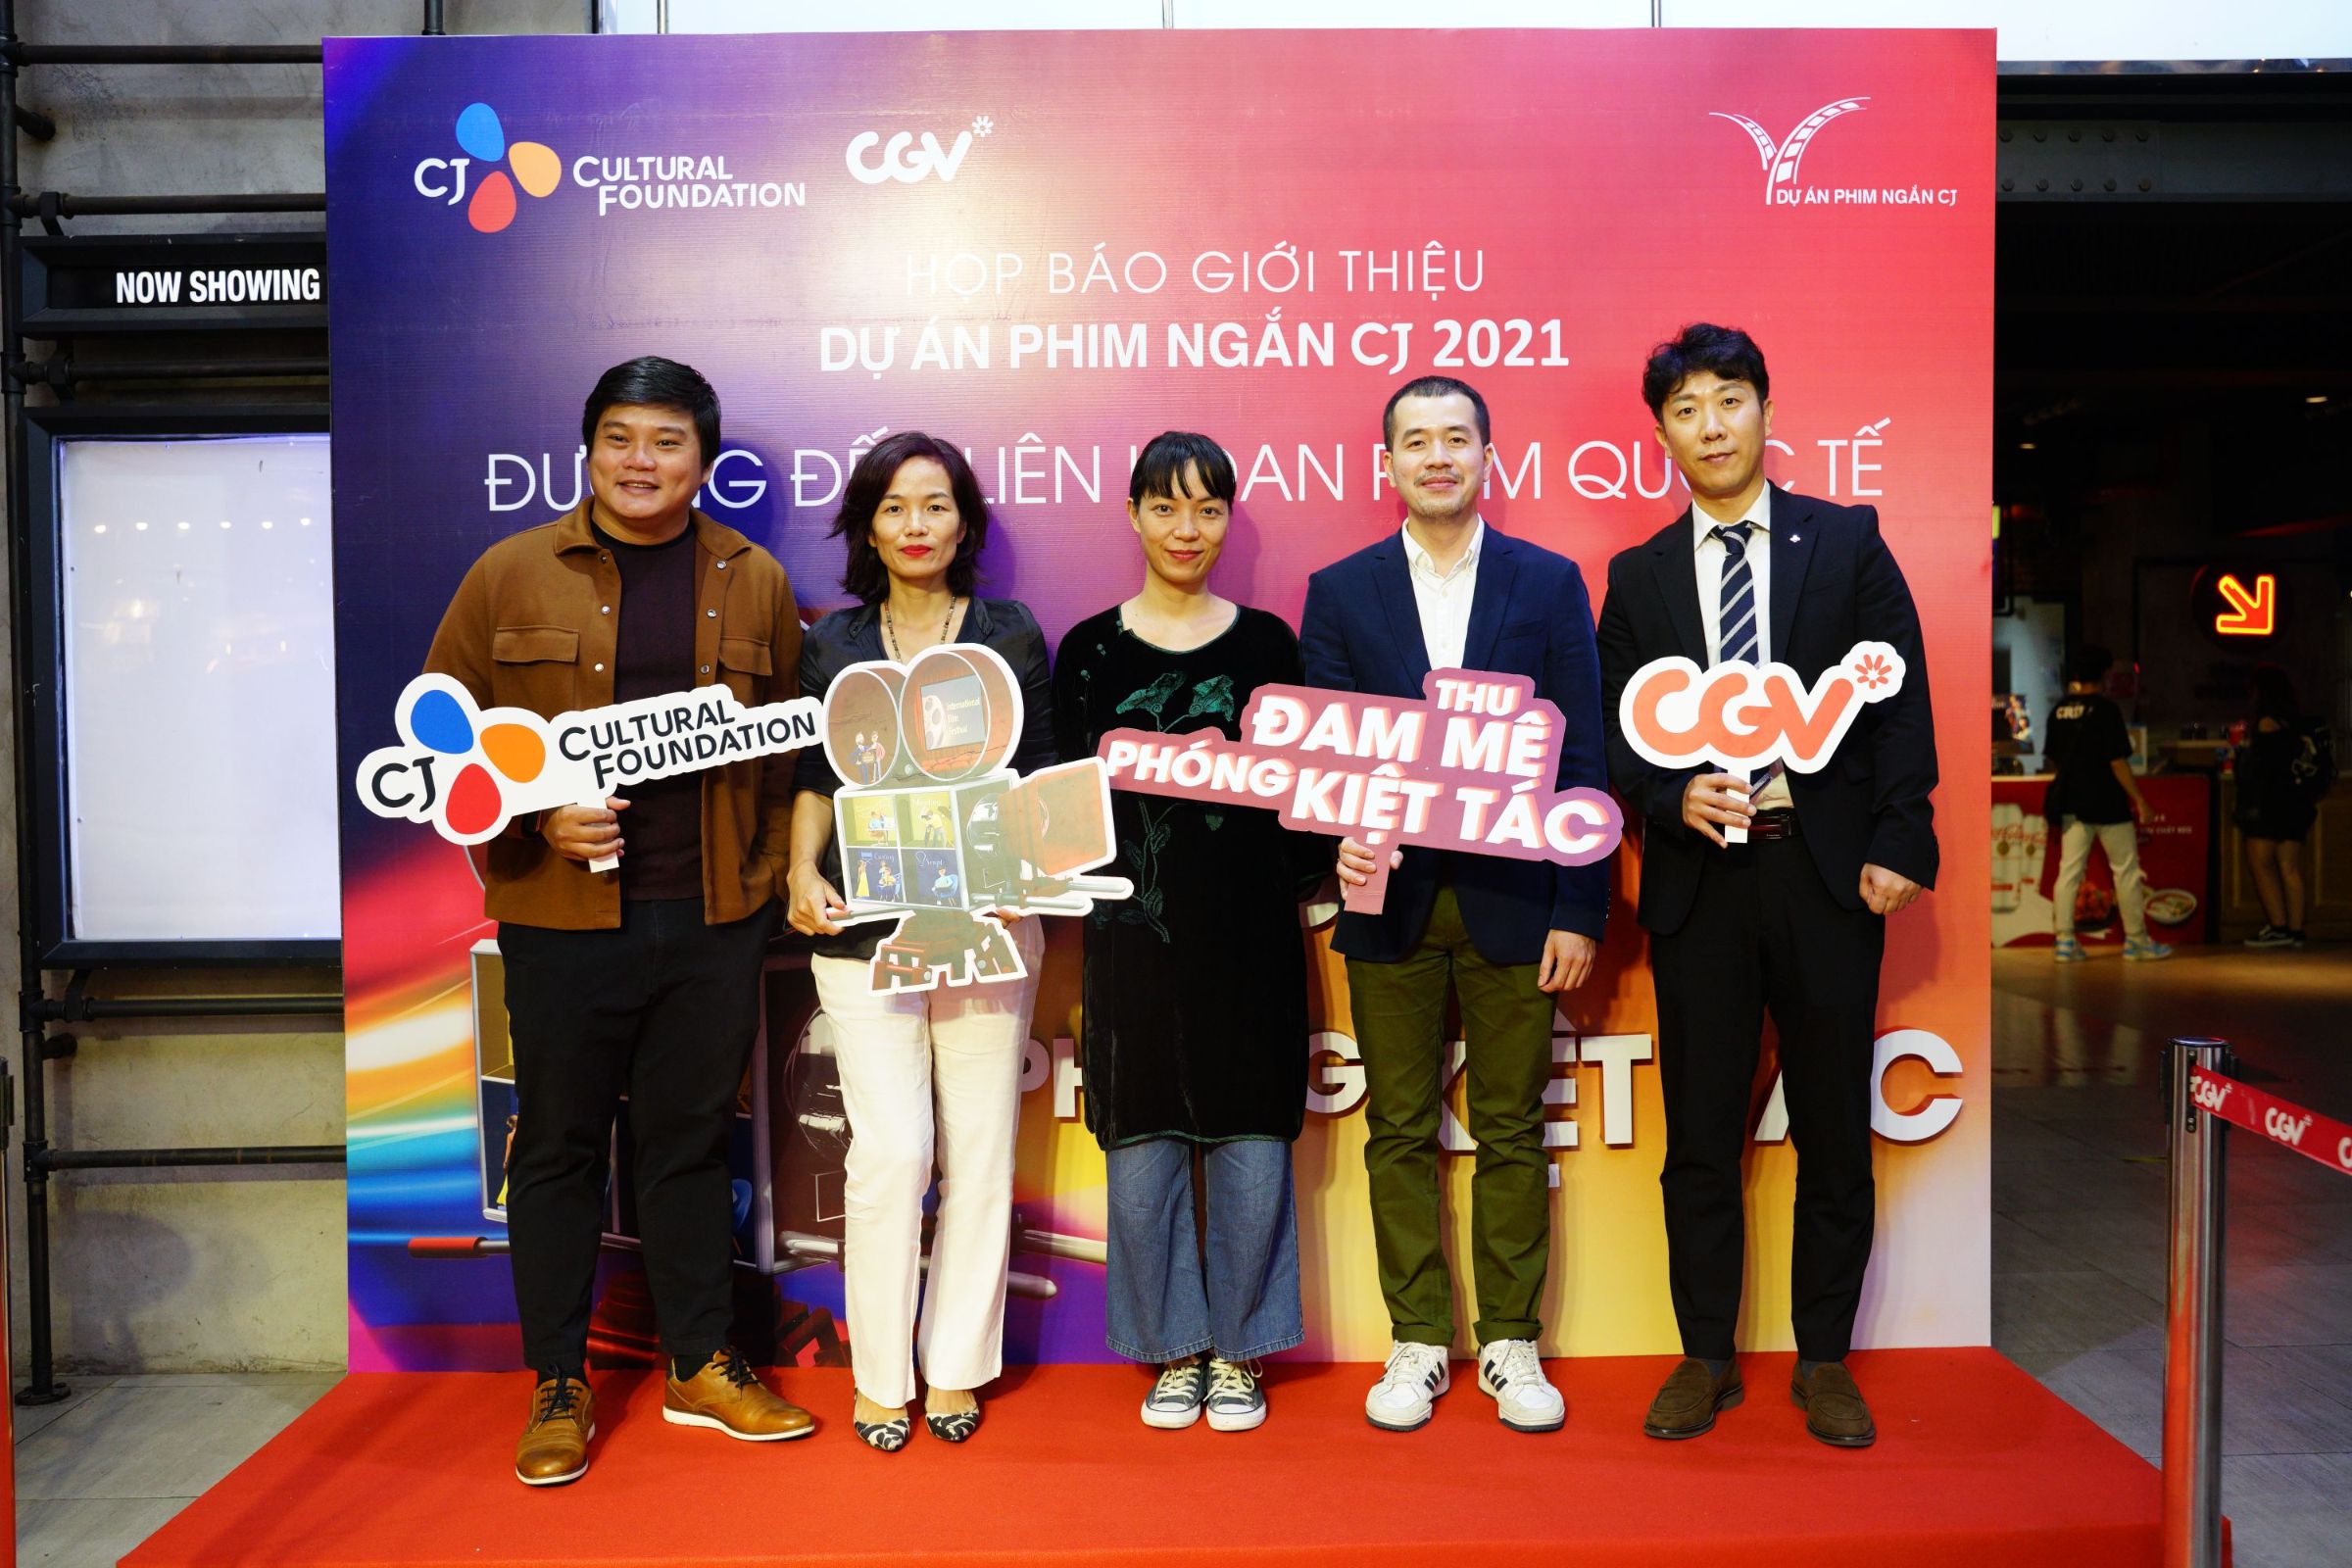 01. Hội đồng thẩm định và đại diện của CGV Việt Nam Dự án phim ngắn CJ tiếp tục tài trợ kinh phí 1,5 tỷ đồng cho nhà làm phim trẻ